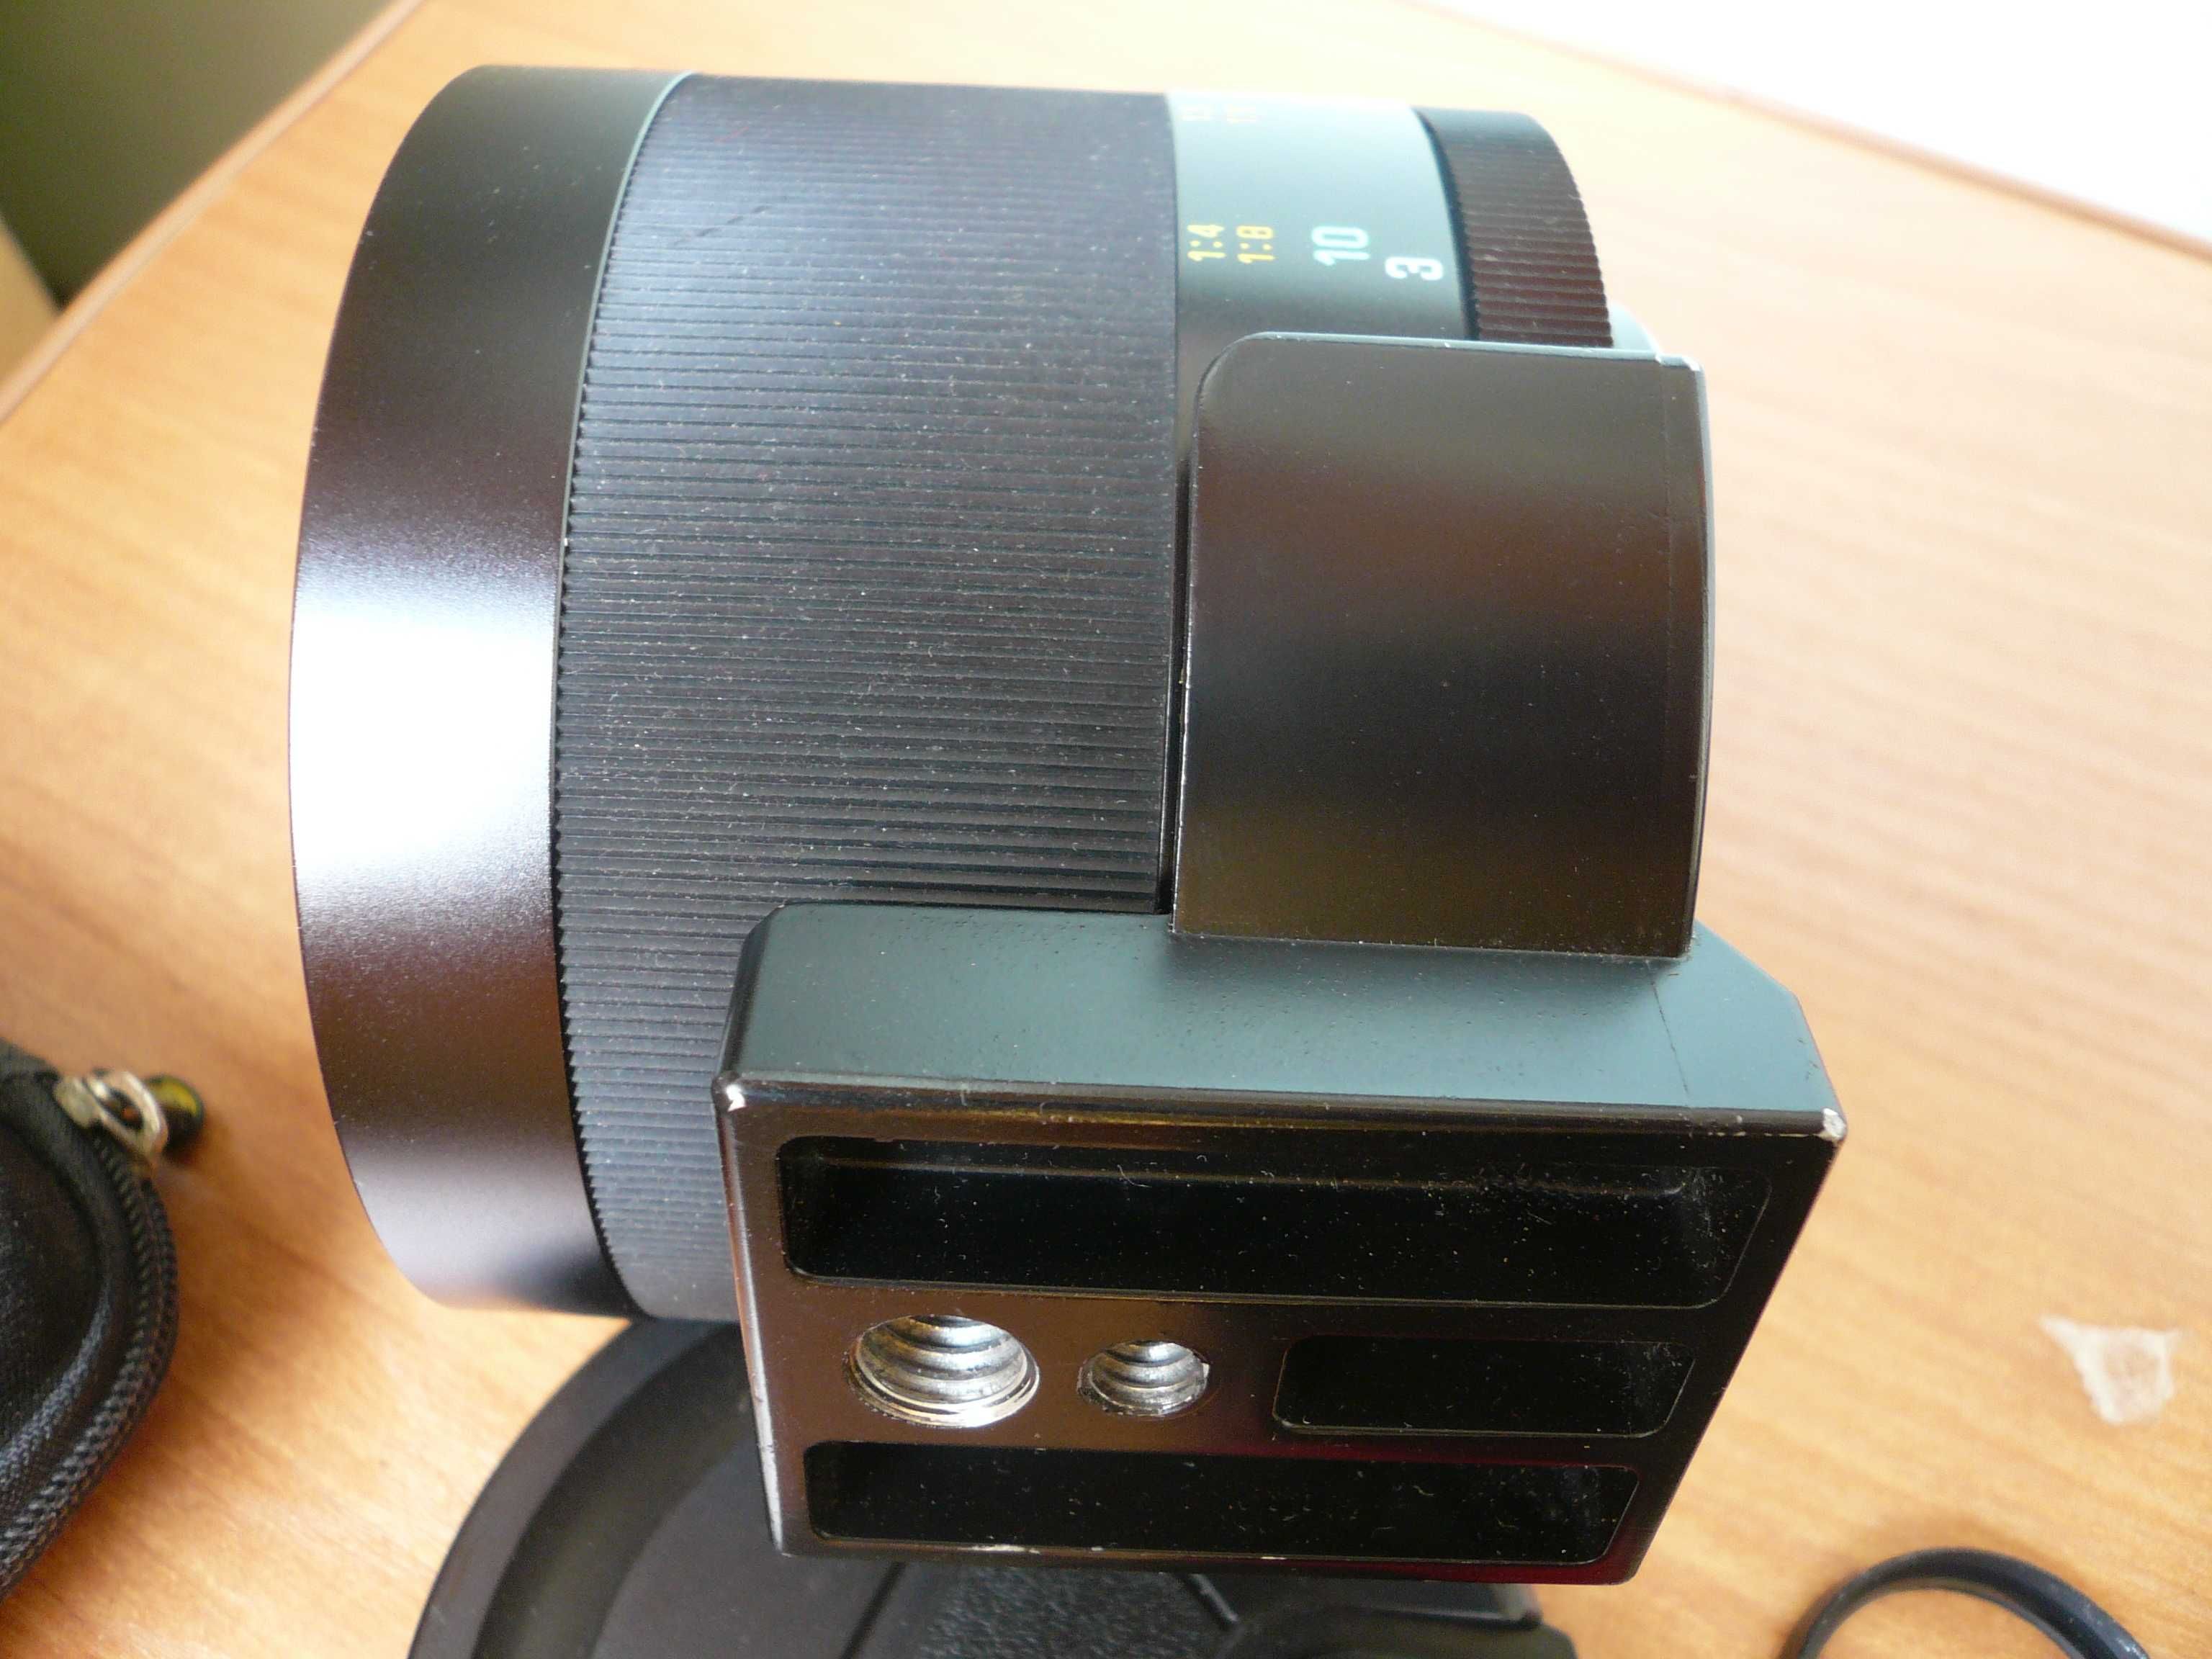 Tamron SP 06b 350mm f5.6 ультра редкий зеркальнолинзовый объектив